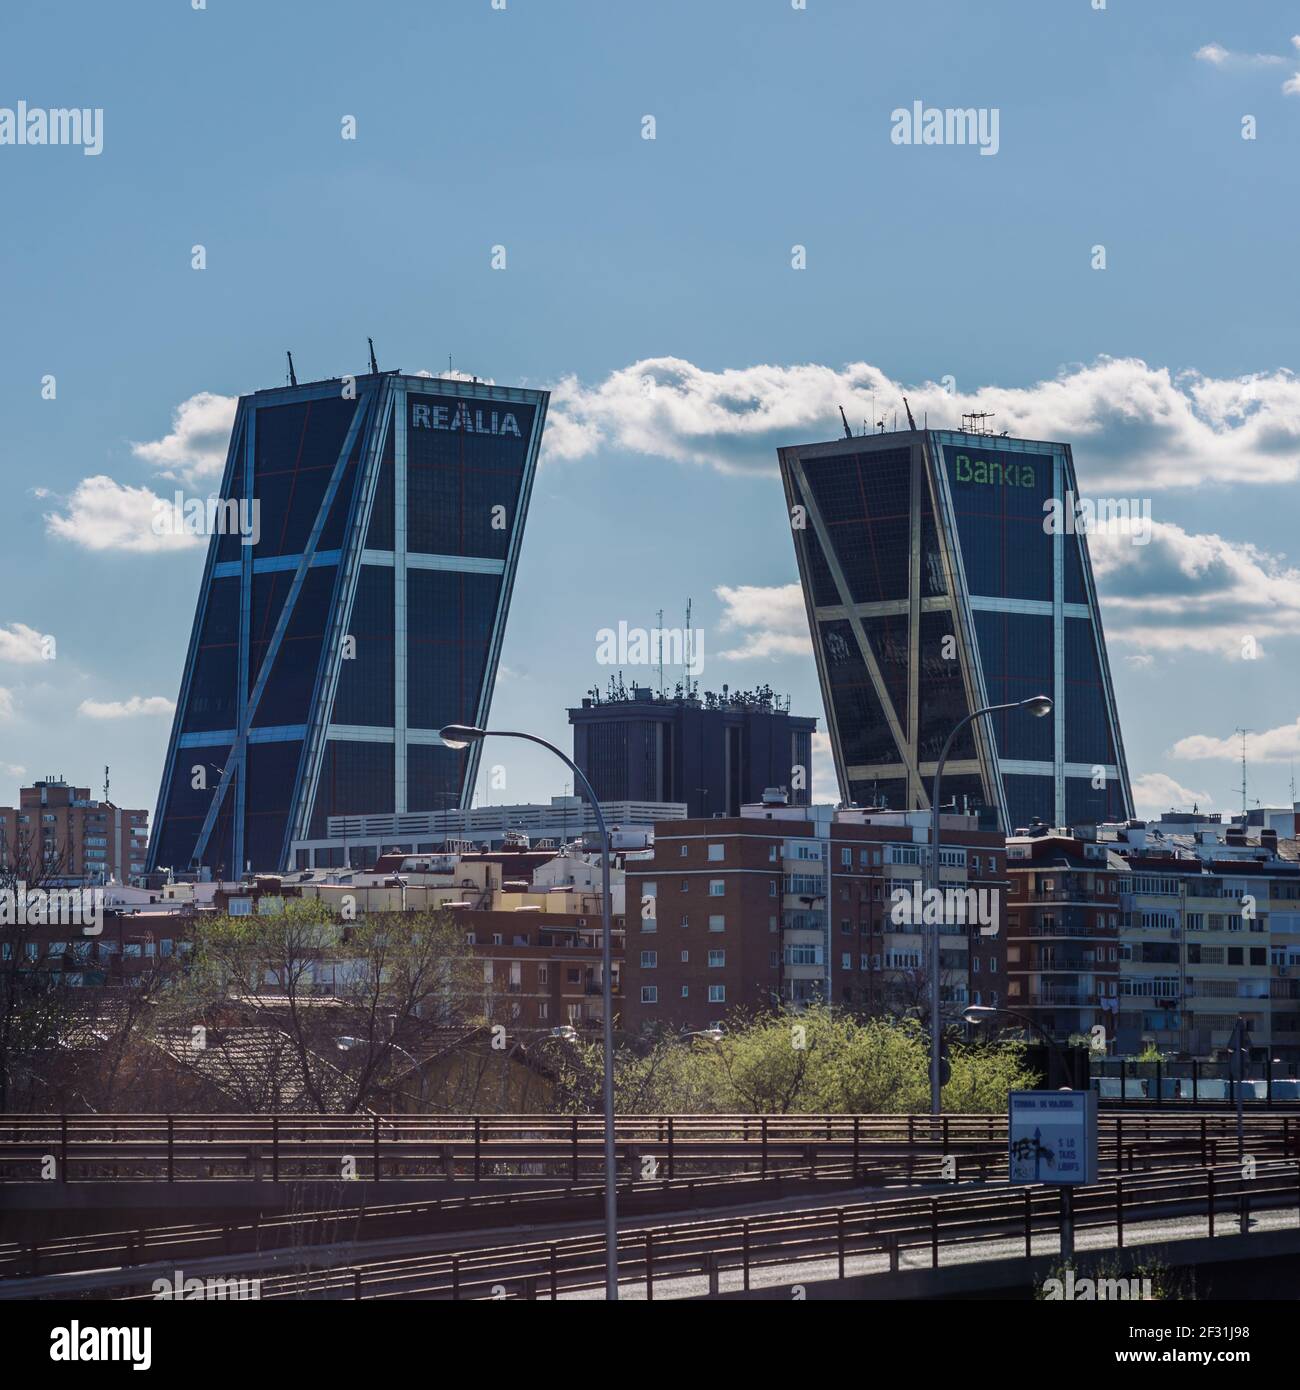 Madrid, Espagne - 14 mars 2021 : immeubles de bureaux modernes à double inclinaison, Puerta de Europa, sur la Plaza de Castilla à Madrid, Espagne Banque D'Images